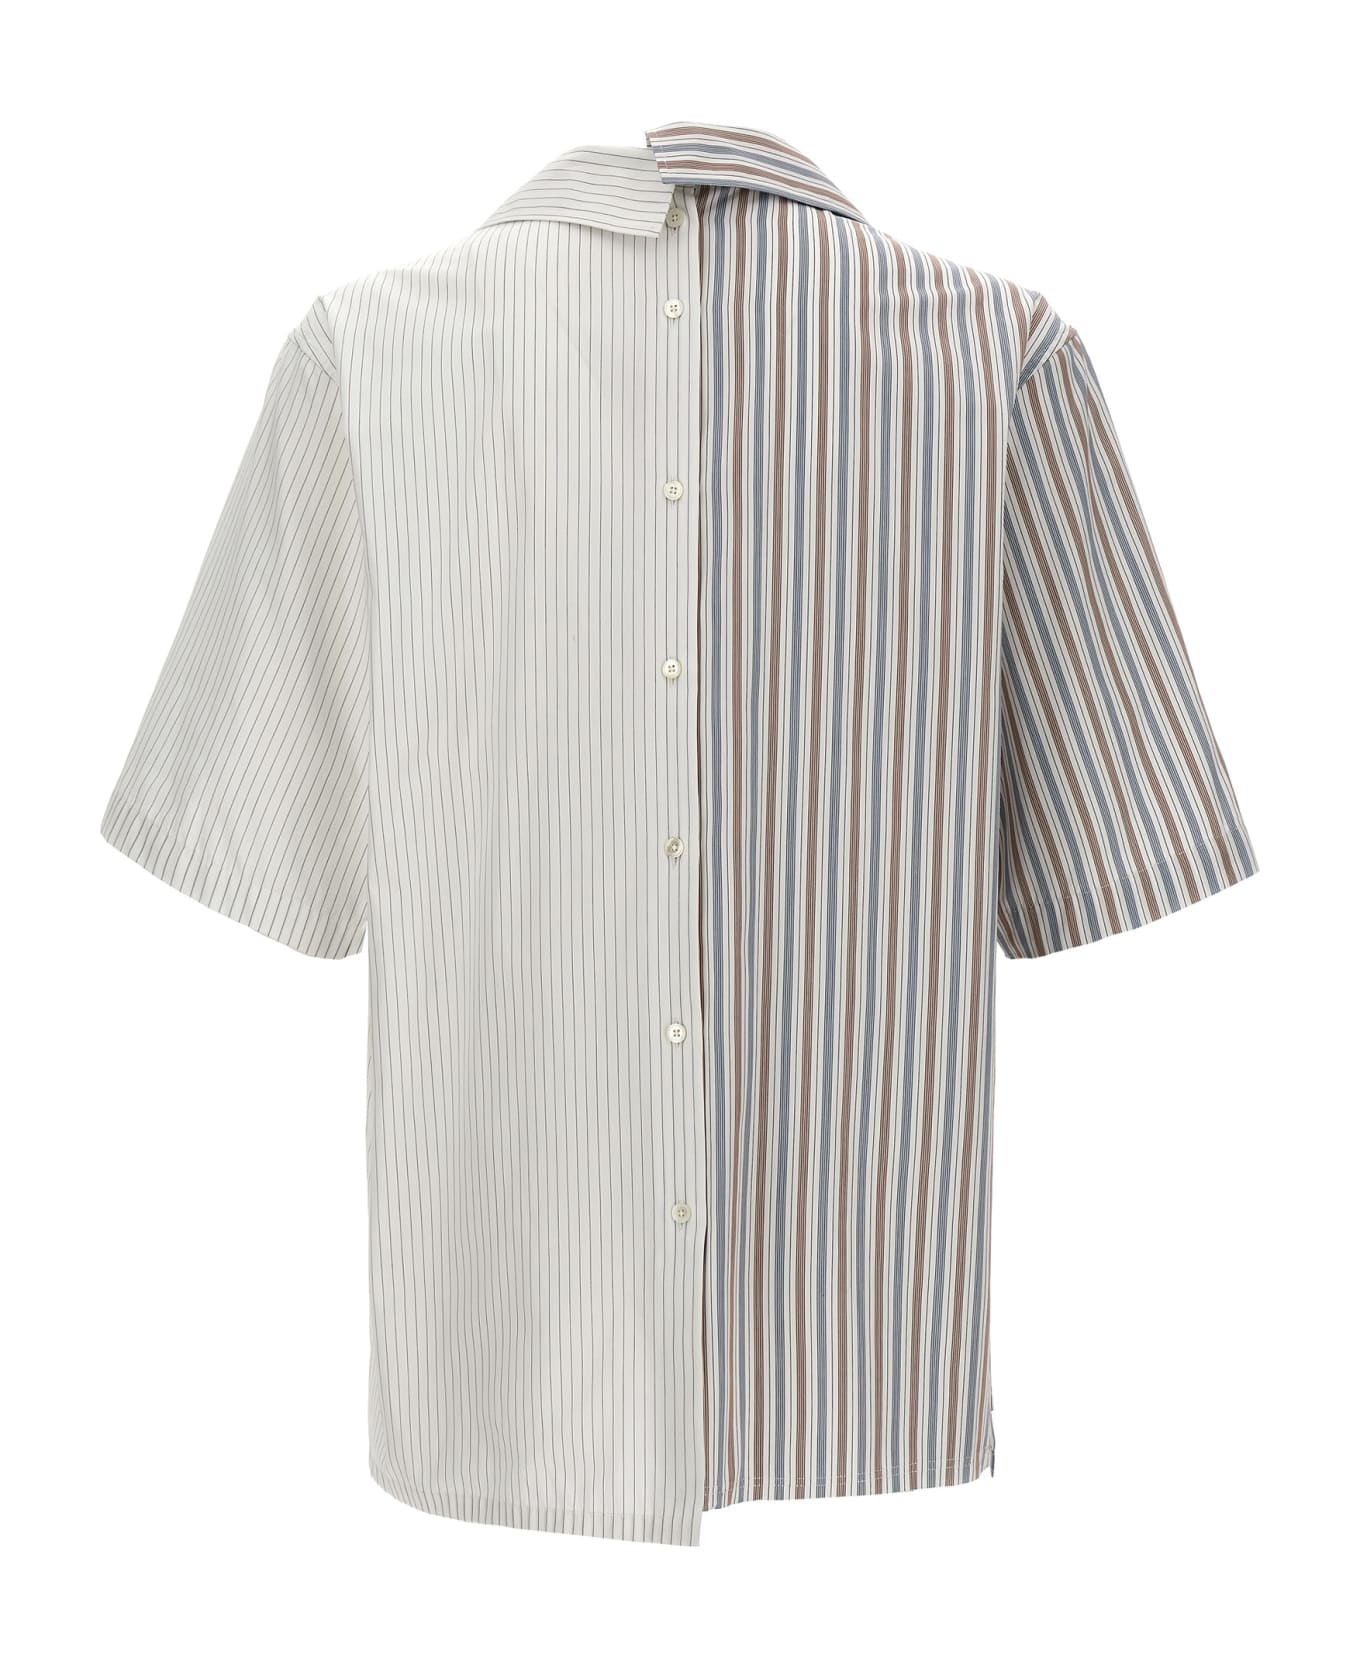 Lanvin Asymmetric Striped Shirt - Bianco シャツ